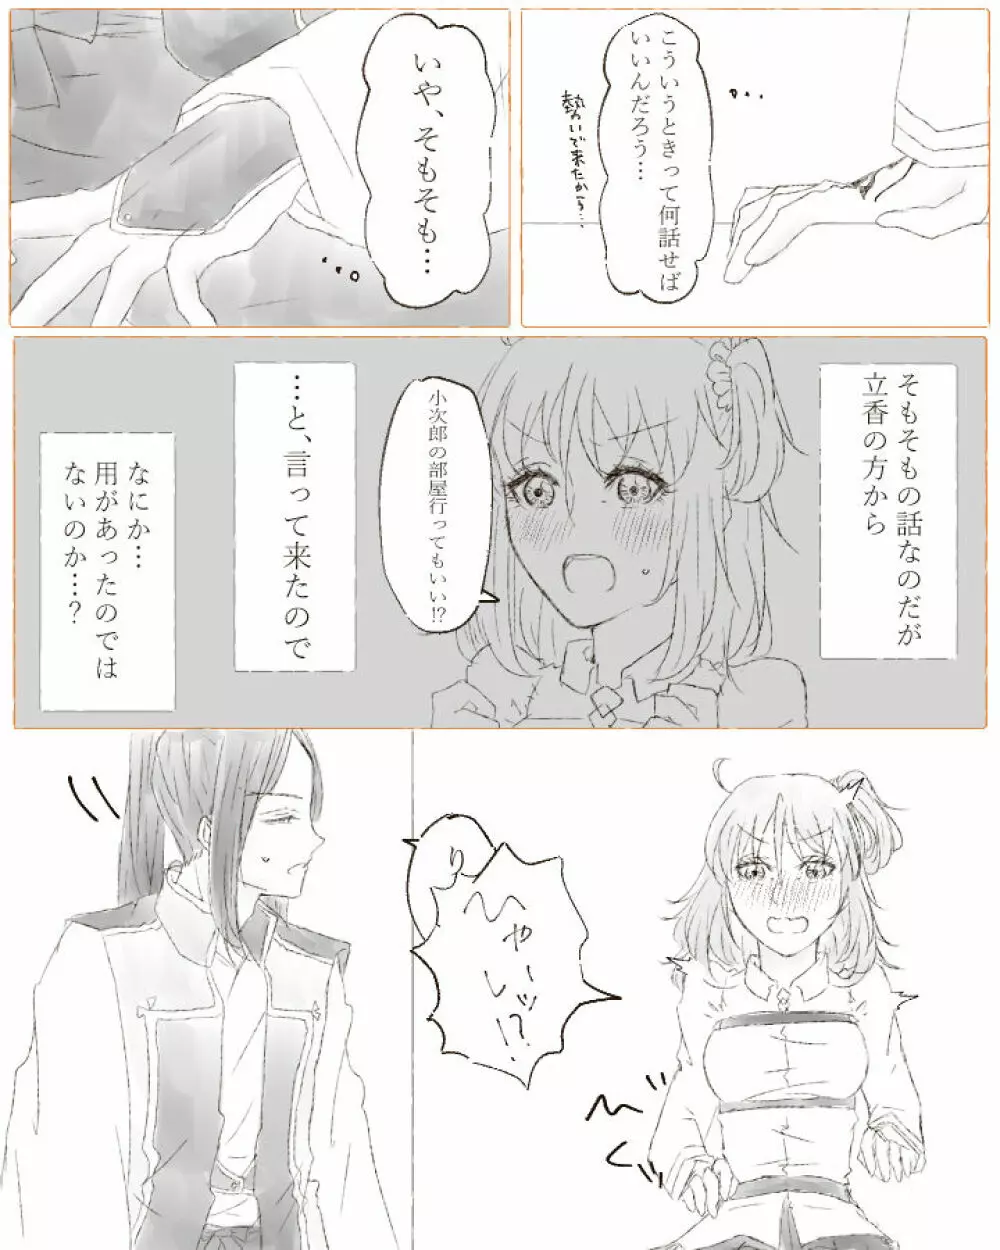 Ikinuki ni kaita ko ji guda ♀ matome[Fate/Grand Order) - page18